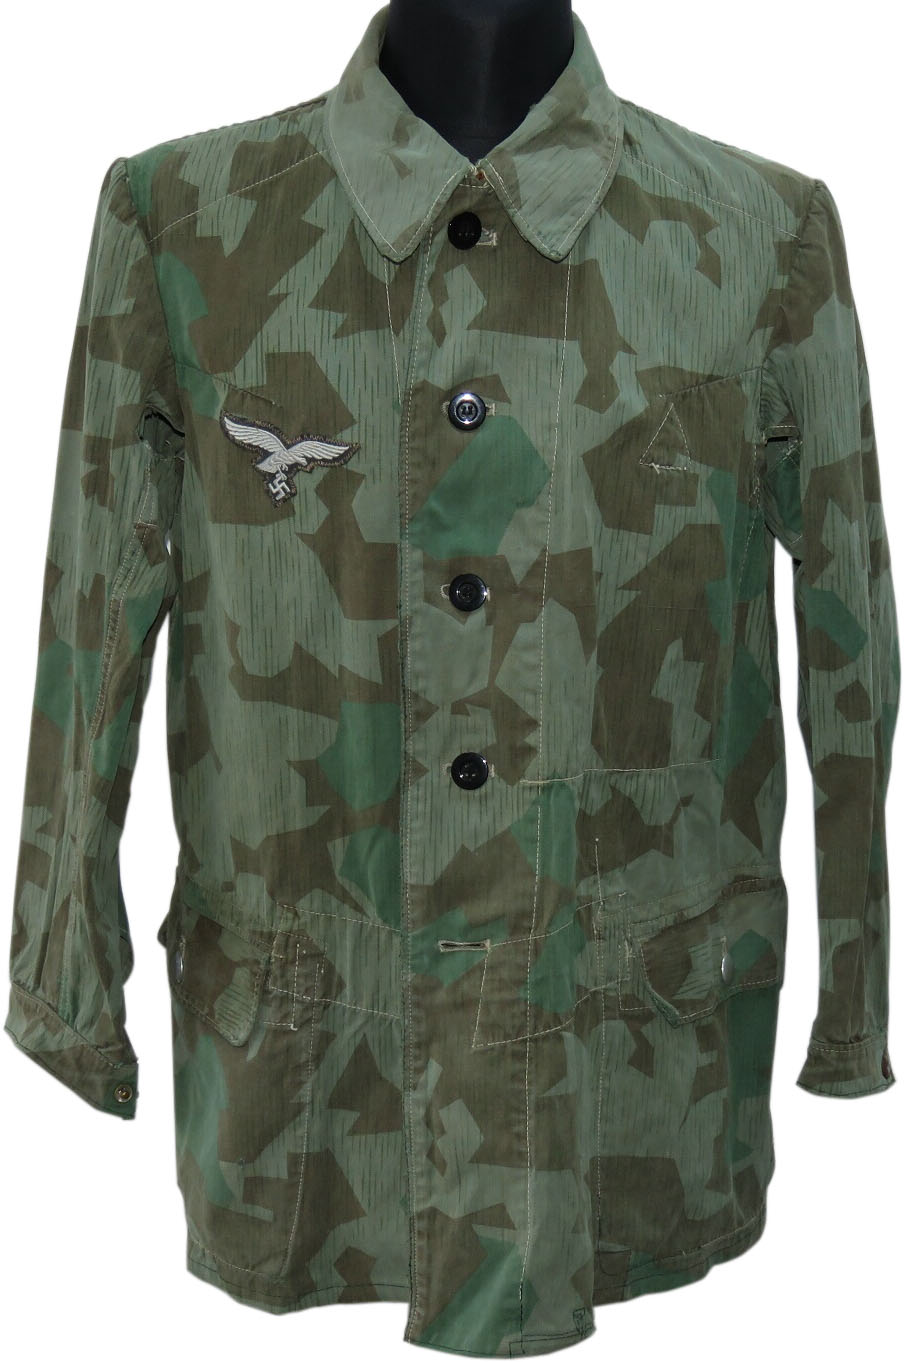 [Matériel] Où se procurer sa tenue et ses équipements ? - Page 2 Luftwaffe-felddivisions-smock-camouflage-grunmeliert-cloth-12182-1